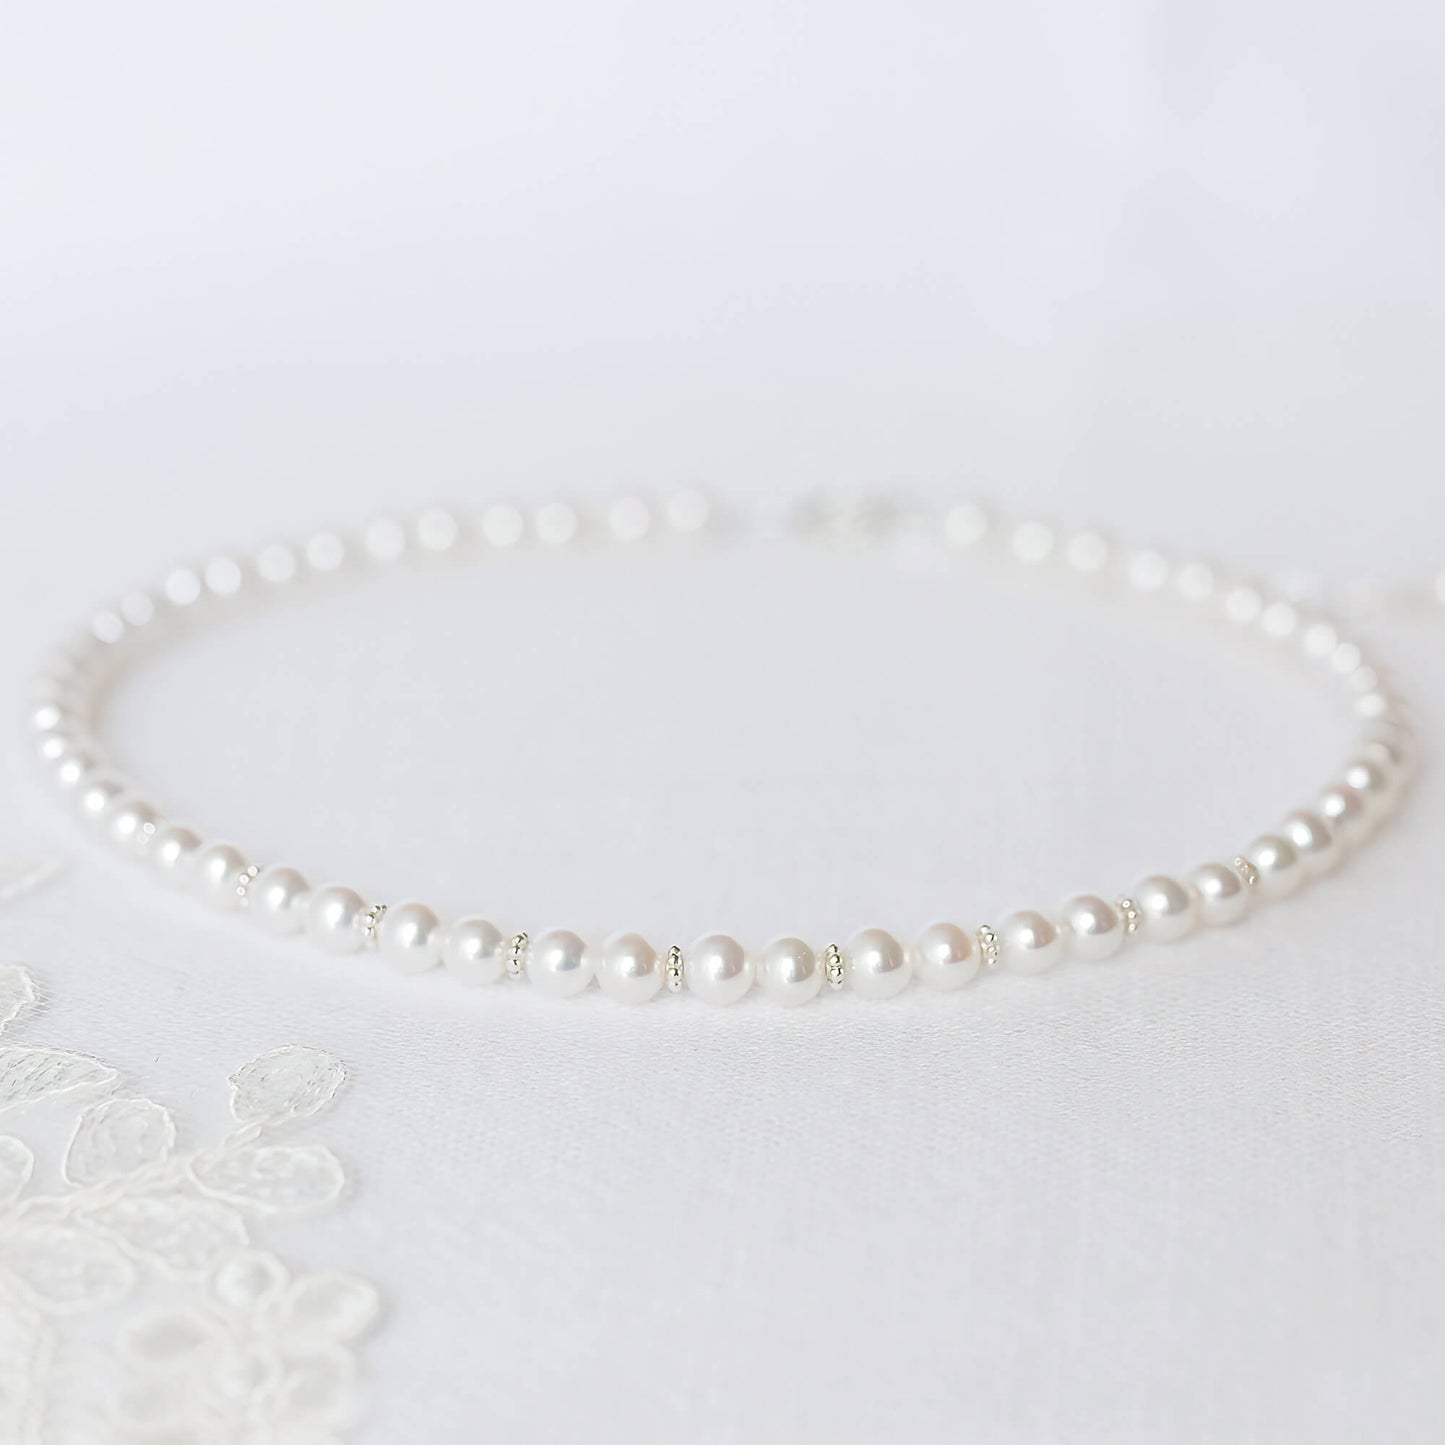 Precious Pearls Necklace in Silver